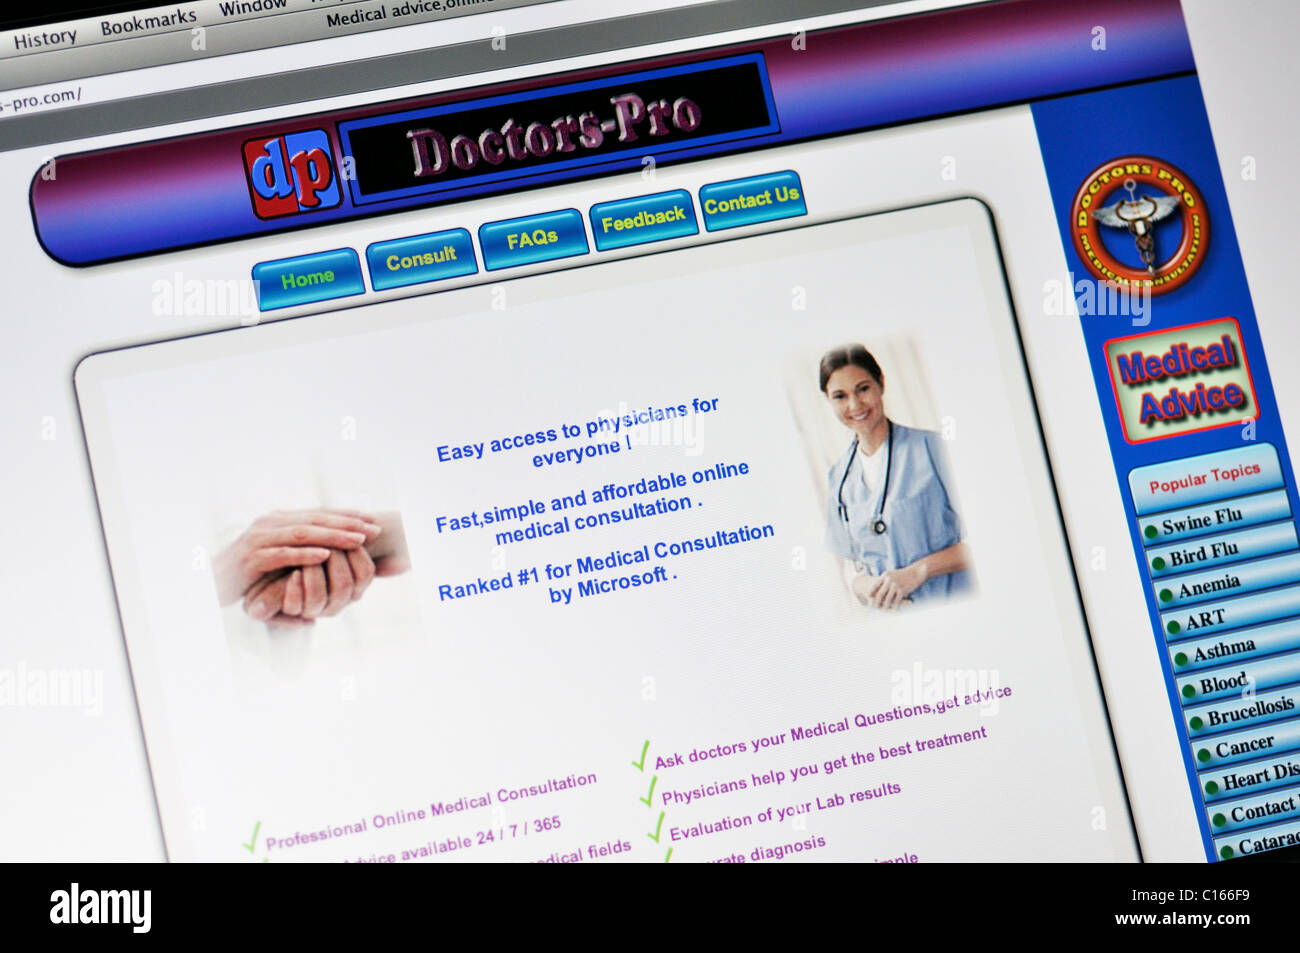 Doctors-Pro site web de conseils médicaux Banque D'Images